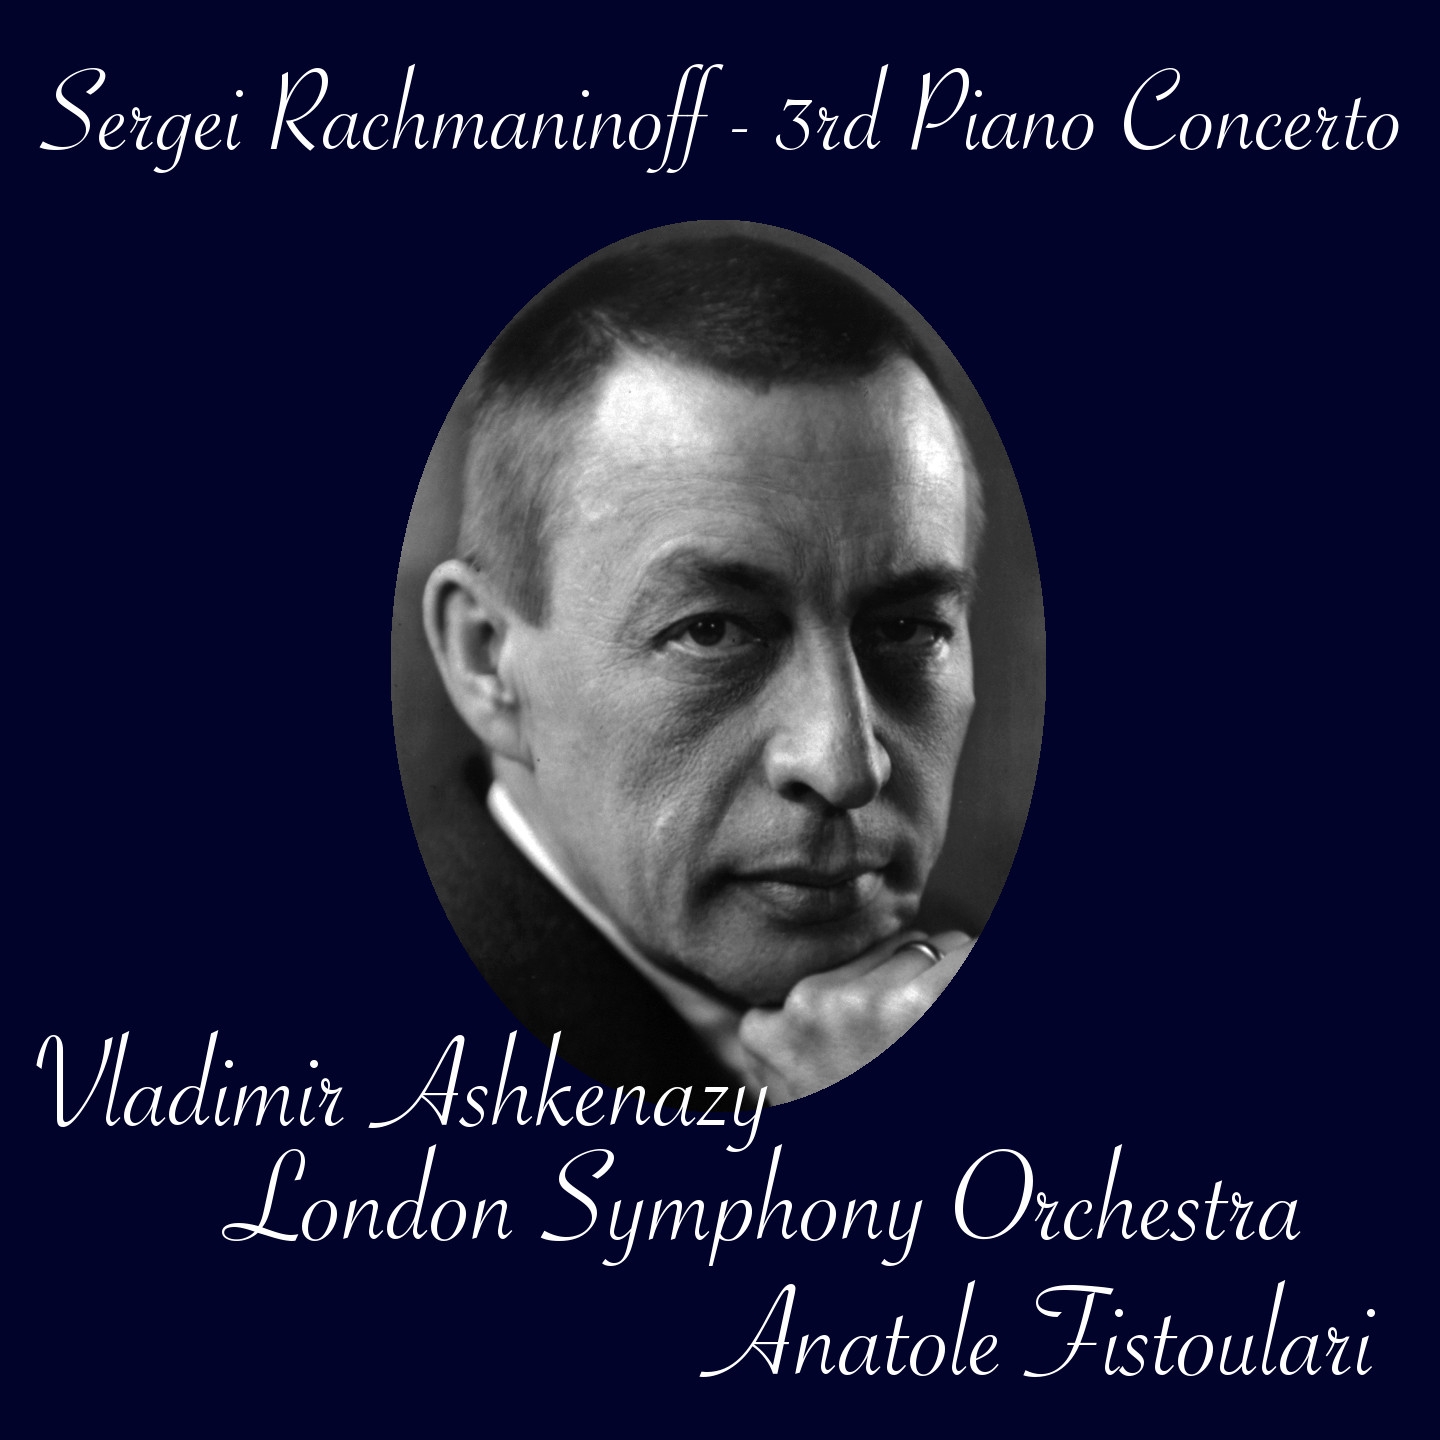 Piano Concerto No. 3 in D Minor, Op. 30: I. Allegro ma non tanto